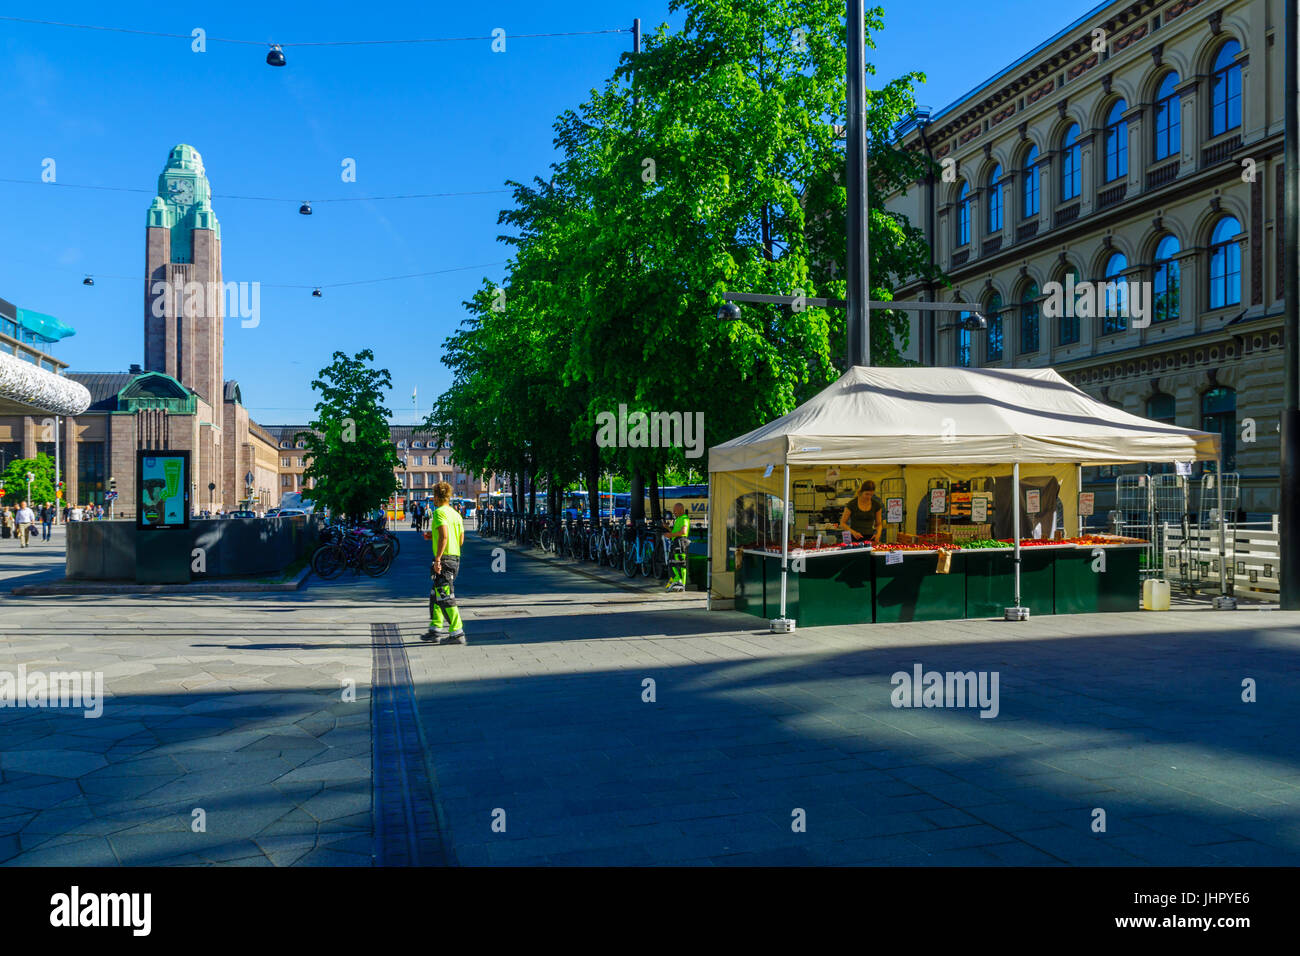 HELSINKI, Finlandia - 16 giugno 2017: scene di strada nel centro della città, con frutta venditore, stazioni ferroviarie, la gente del posto e i turisti, a Helsinki in Finlandia Foto Stock